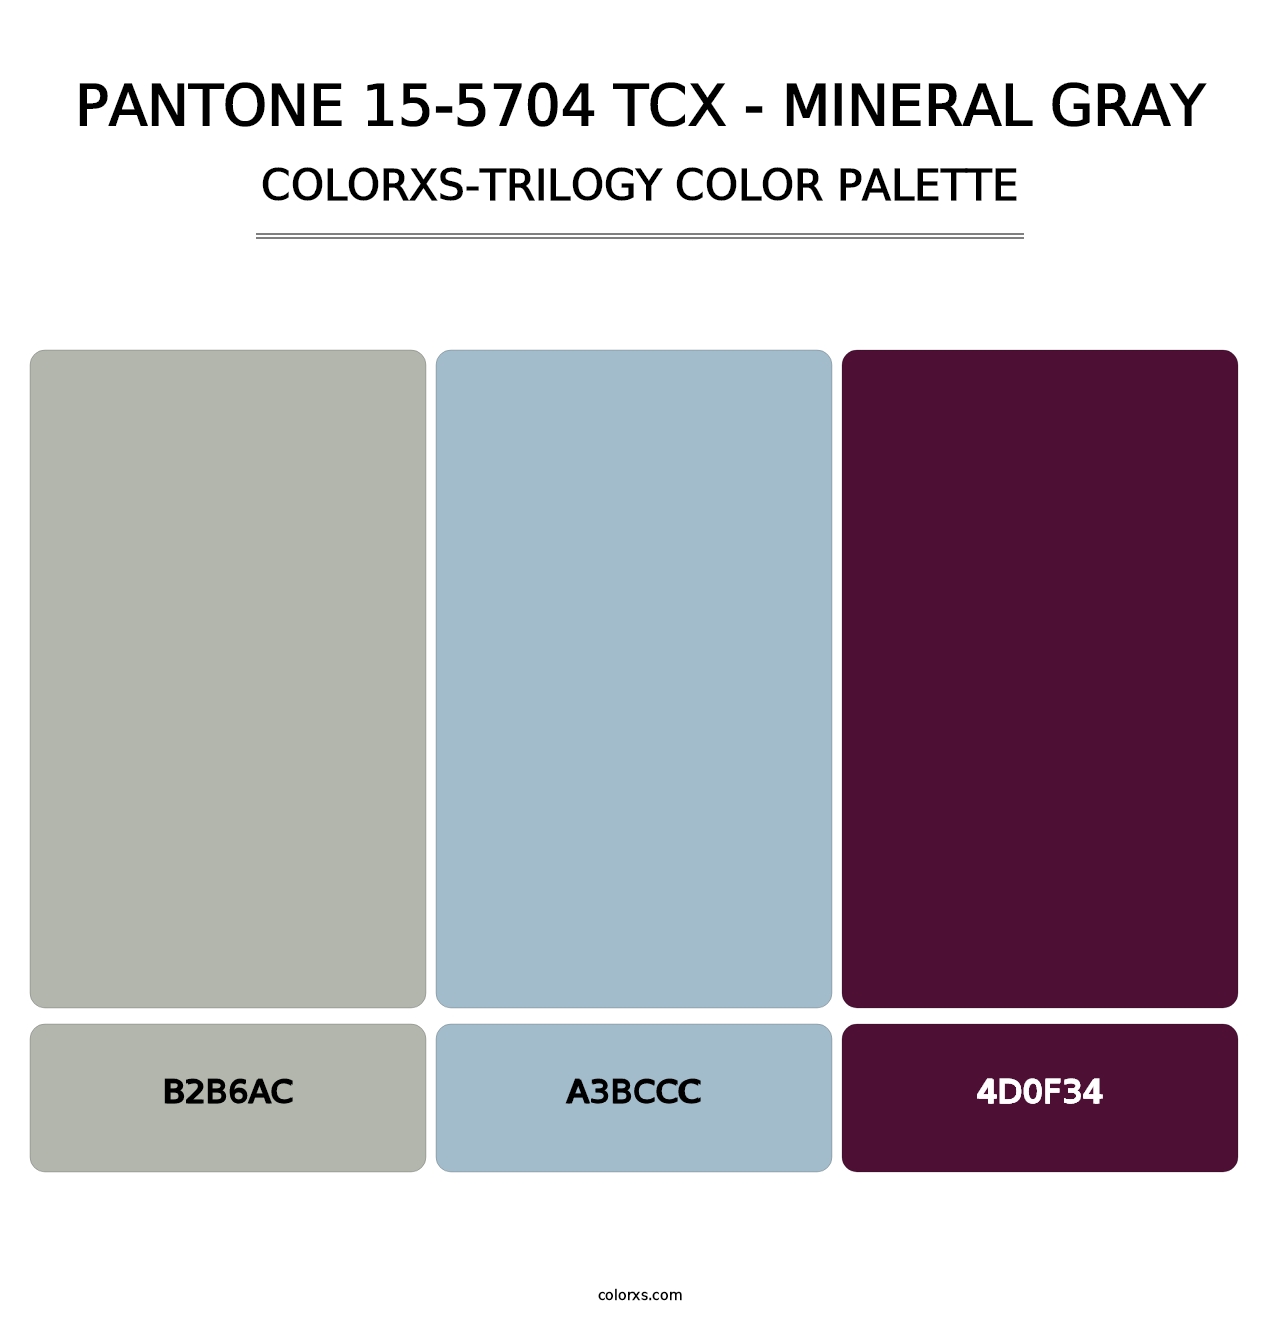 PANTONE 15-5704 TCX - Mineral Gray - Colorxs Trilogy Palette